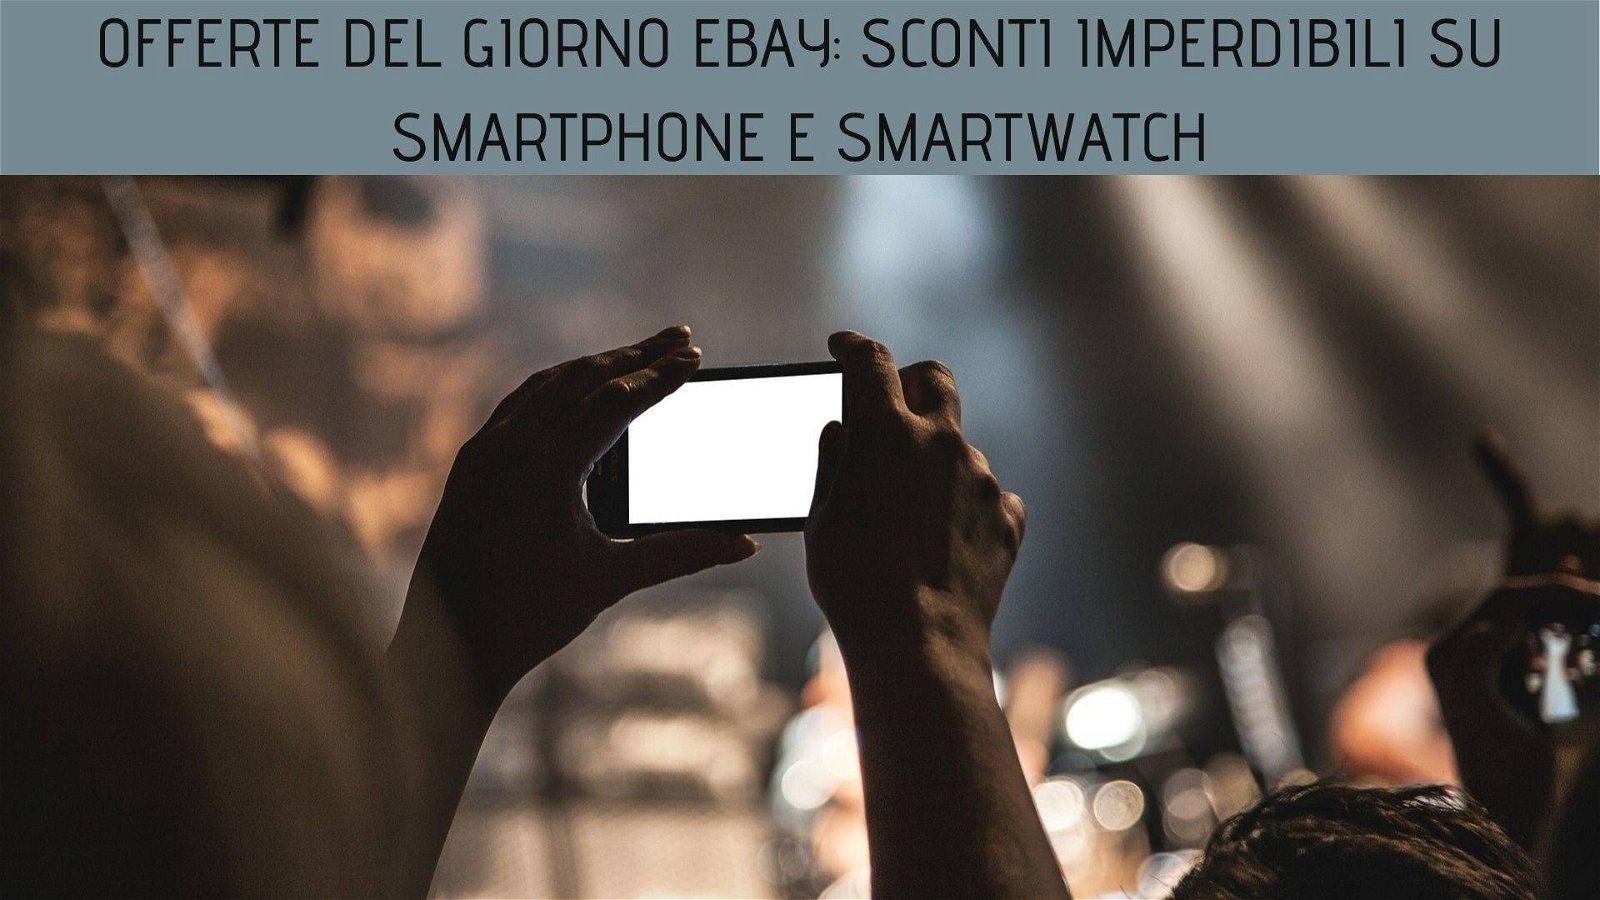 Immagine di Offerte del giorno eBay: sconti imperdibili su smartphone e smartwatch